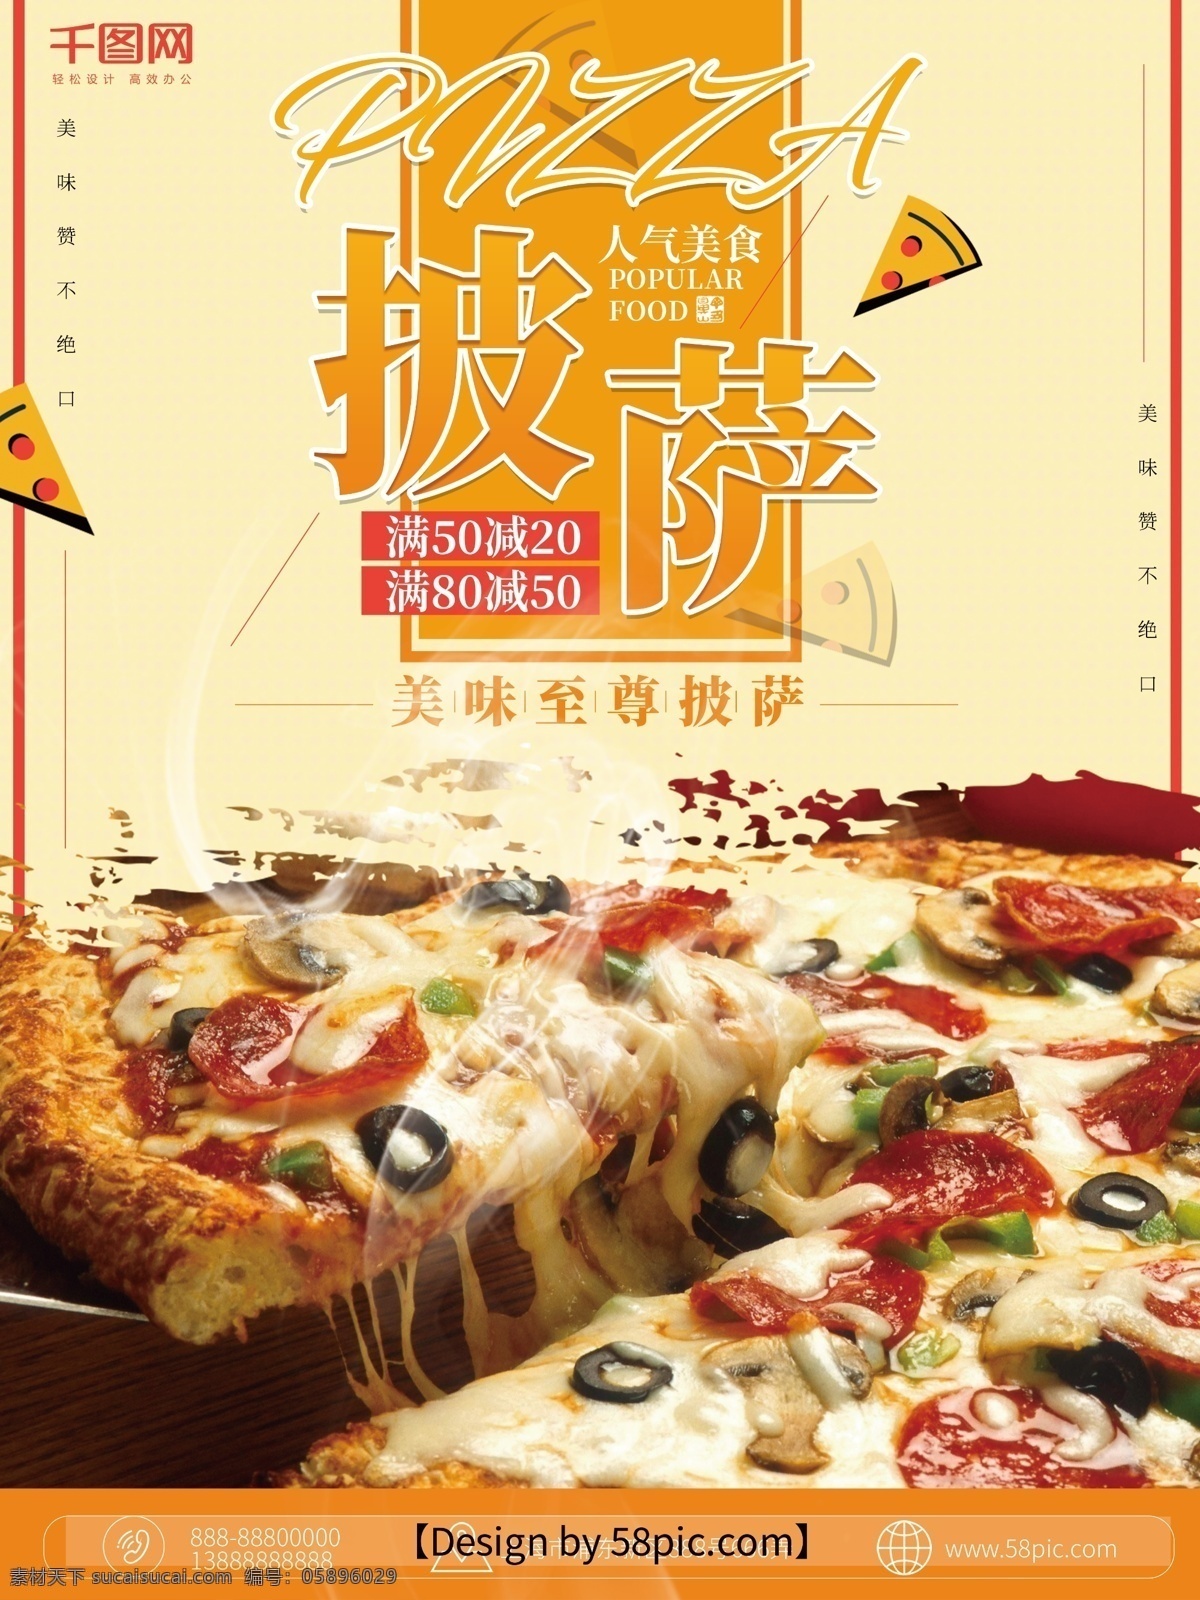 披萨 米黄色 时尚 美食 海报 披萨海报 披萨美食 烟雾 时尚披萨海报 西式美食海报 美食海报